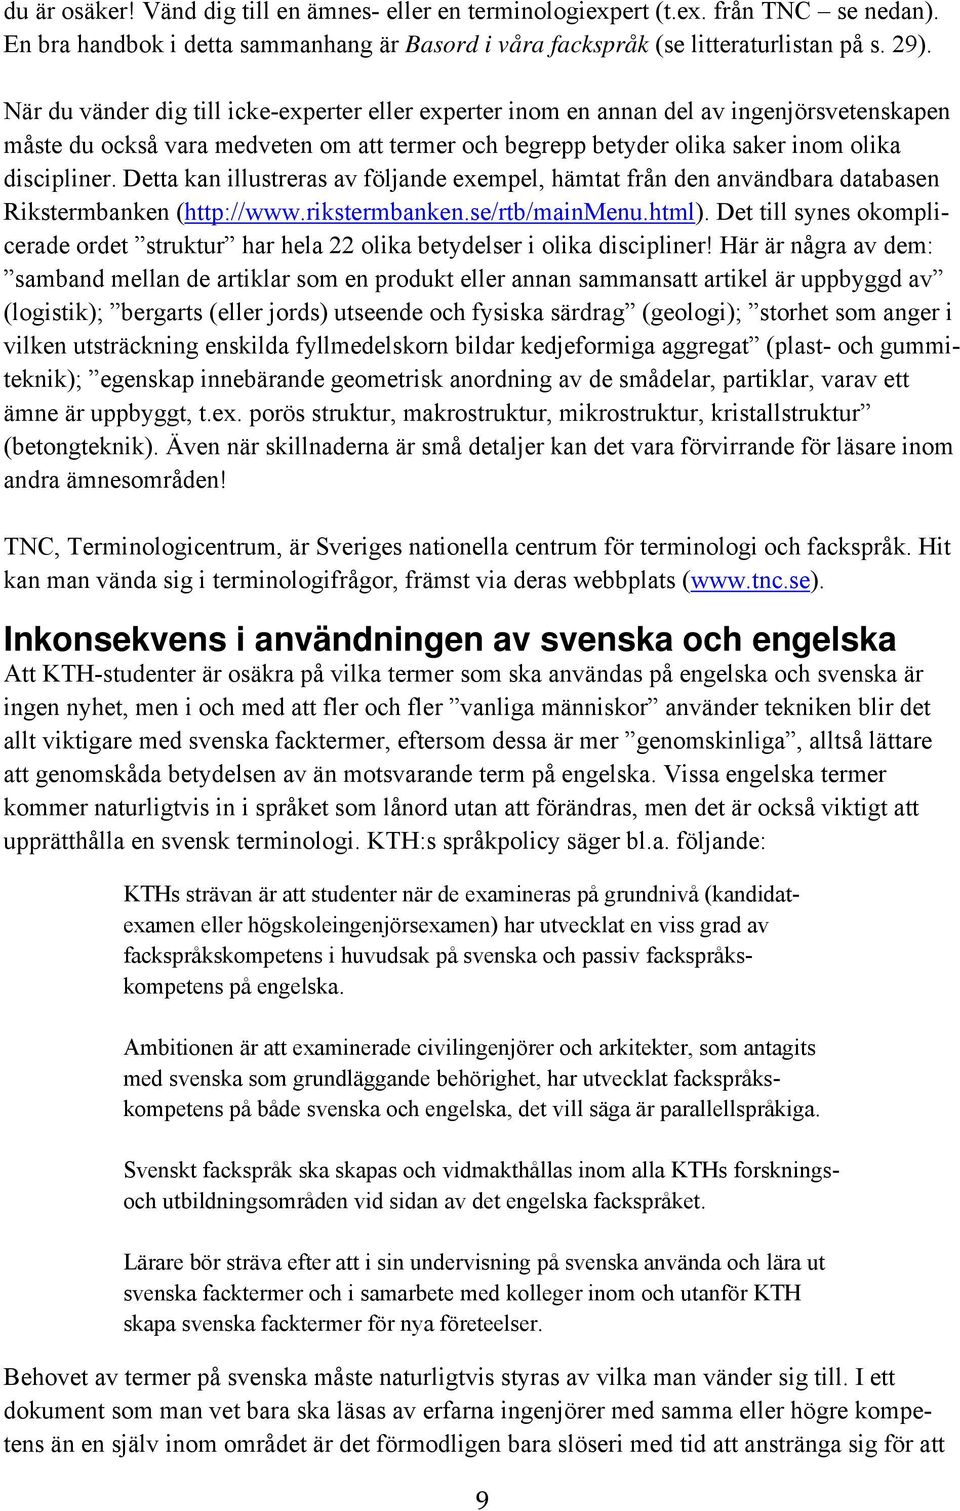 Detta kan illustreras av följande exempel, hämtat från den användbara databasen Rikstermbanken (http://www.rikstermbanken.se/rtb/mainmenu.html).